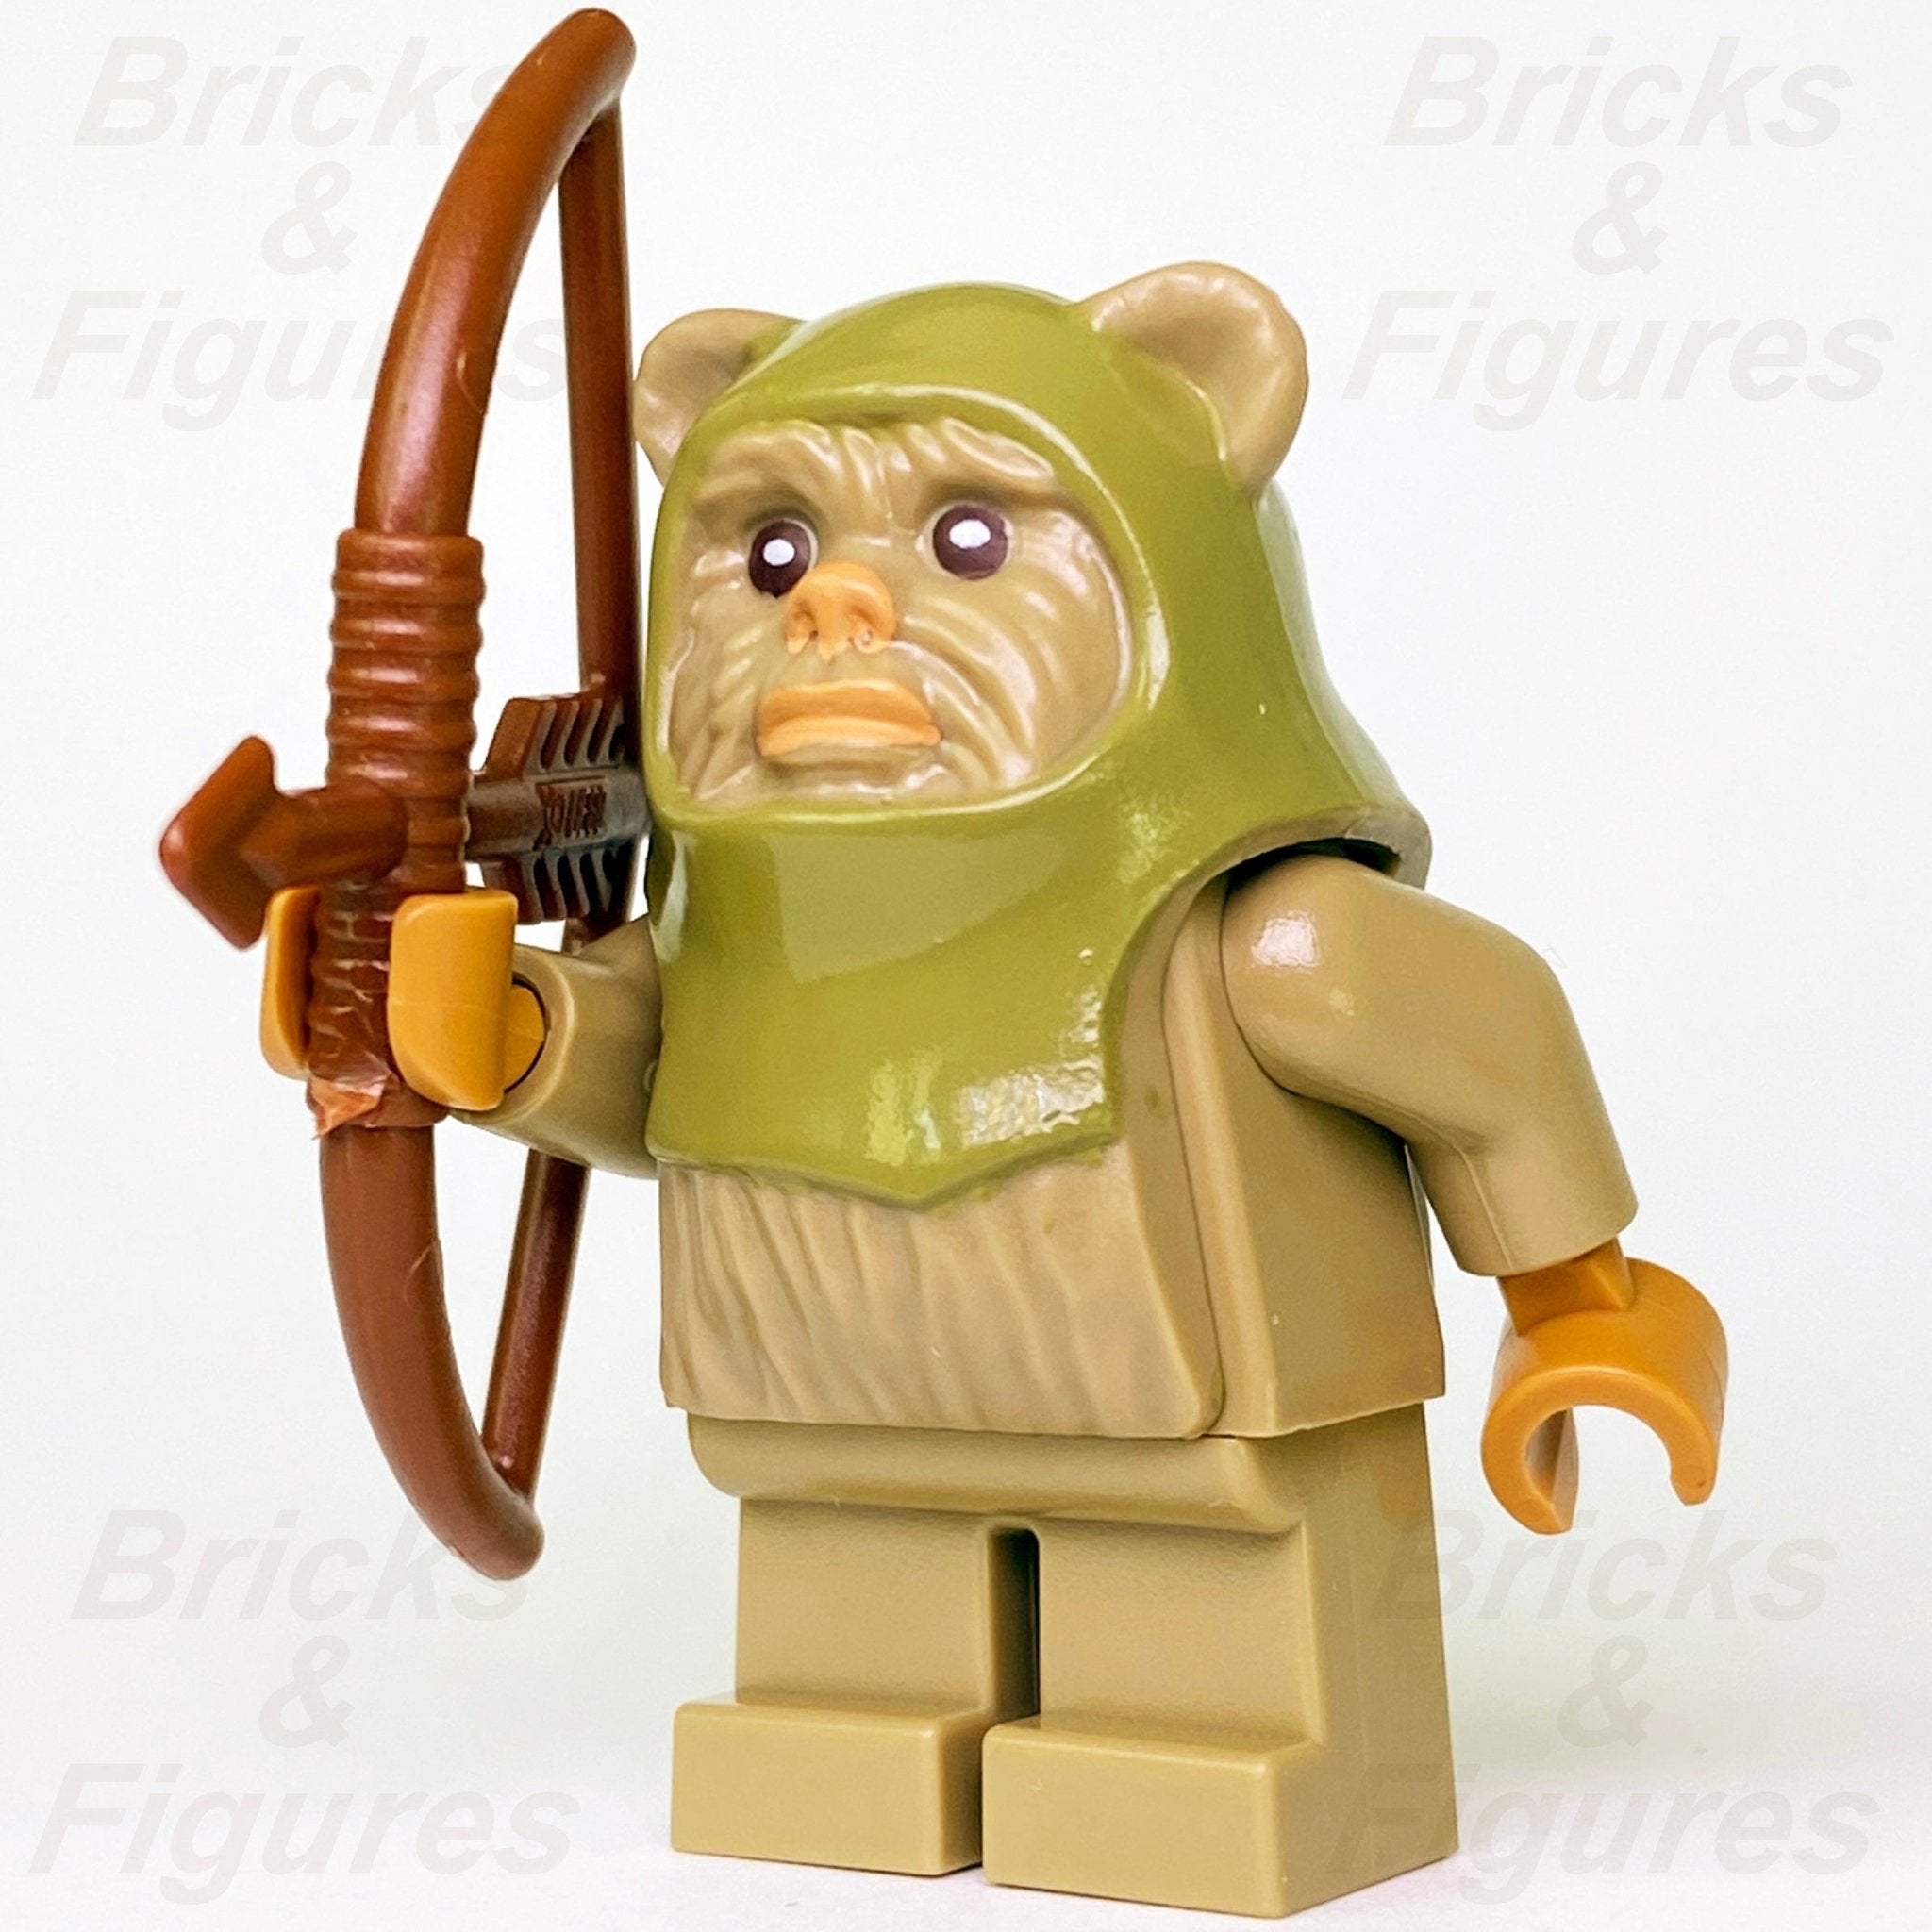 LEGO Ewok Minifigures